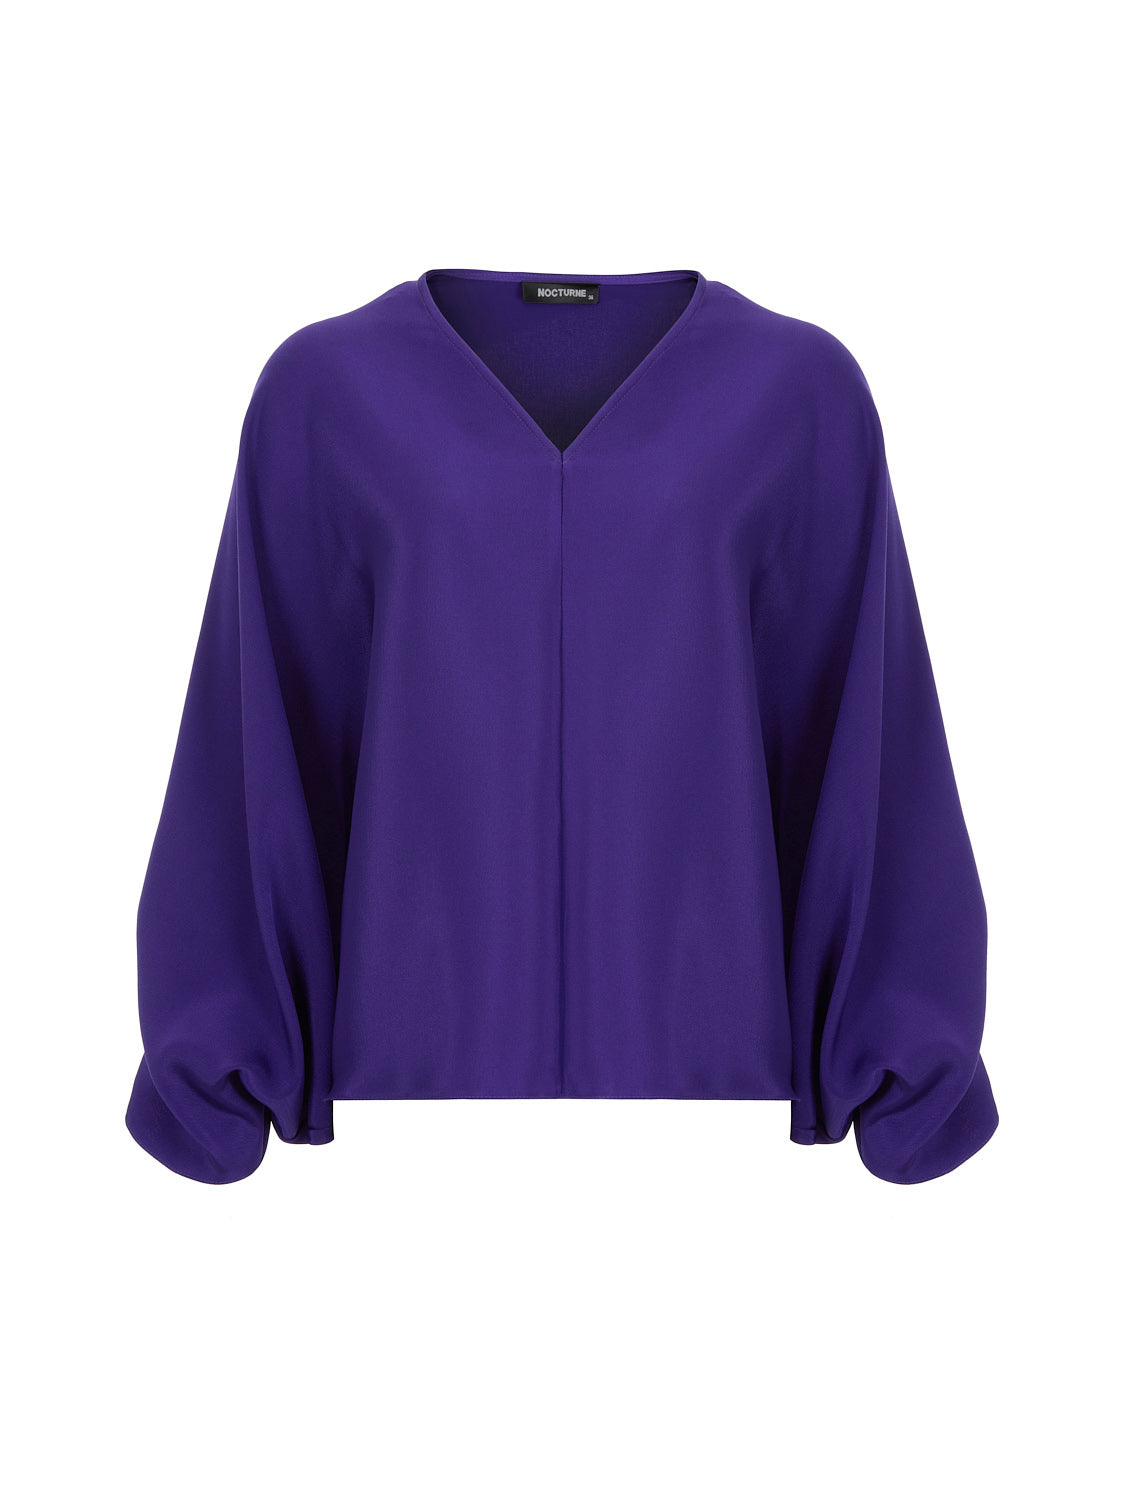 Nocturne Women's Pink / Purple Batwing Sleeve Oversized Purple Top